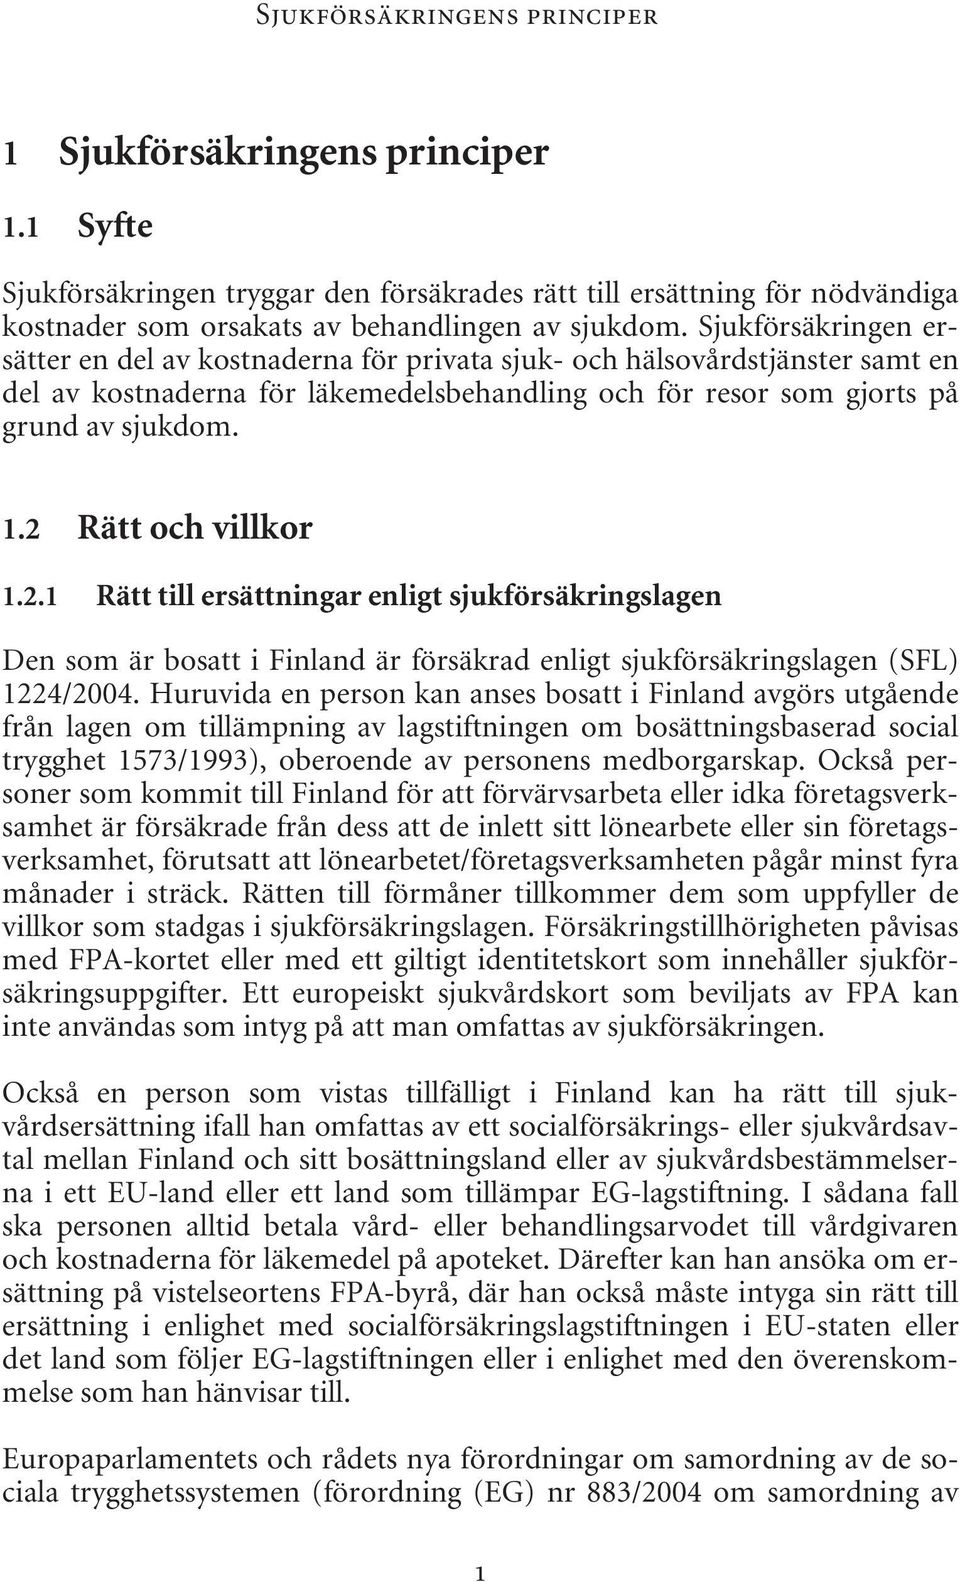 2 Rätt och villkor 1.2.1 Rätt till ersättningar enligt sjukförsäkringslagen Den som är bosatt i Finland är försäkrad enligt sjukförsäkringslagen (SFL) 1224/2004.